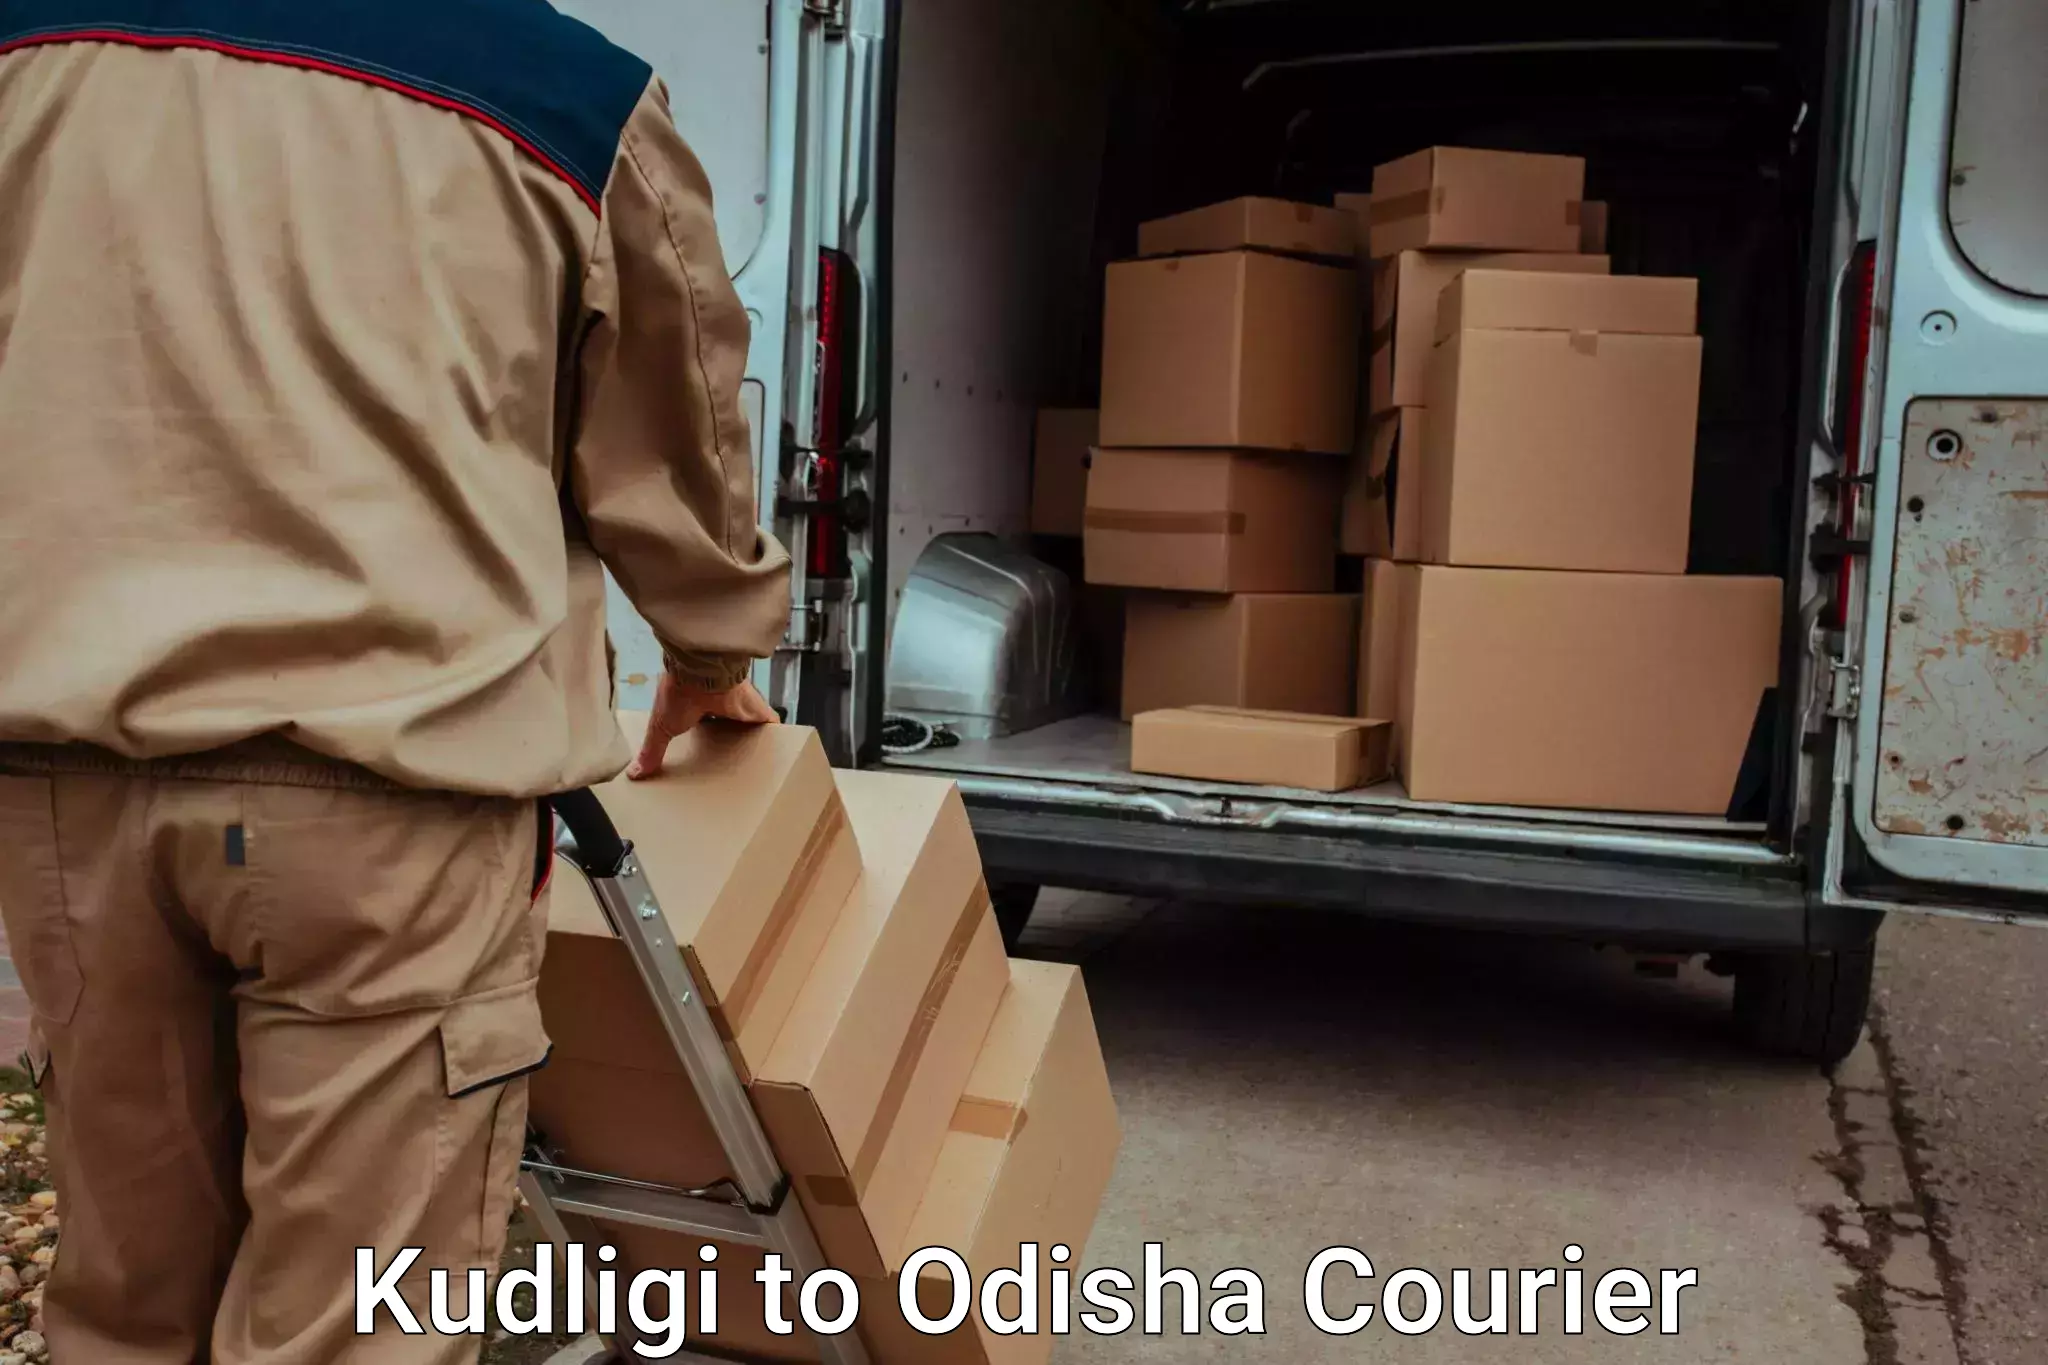 Holiday season luggage delivery Kudligi to Kupari